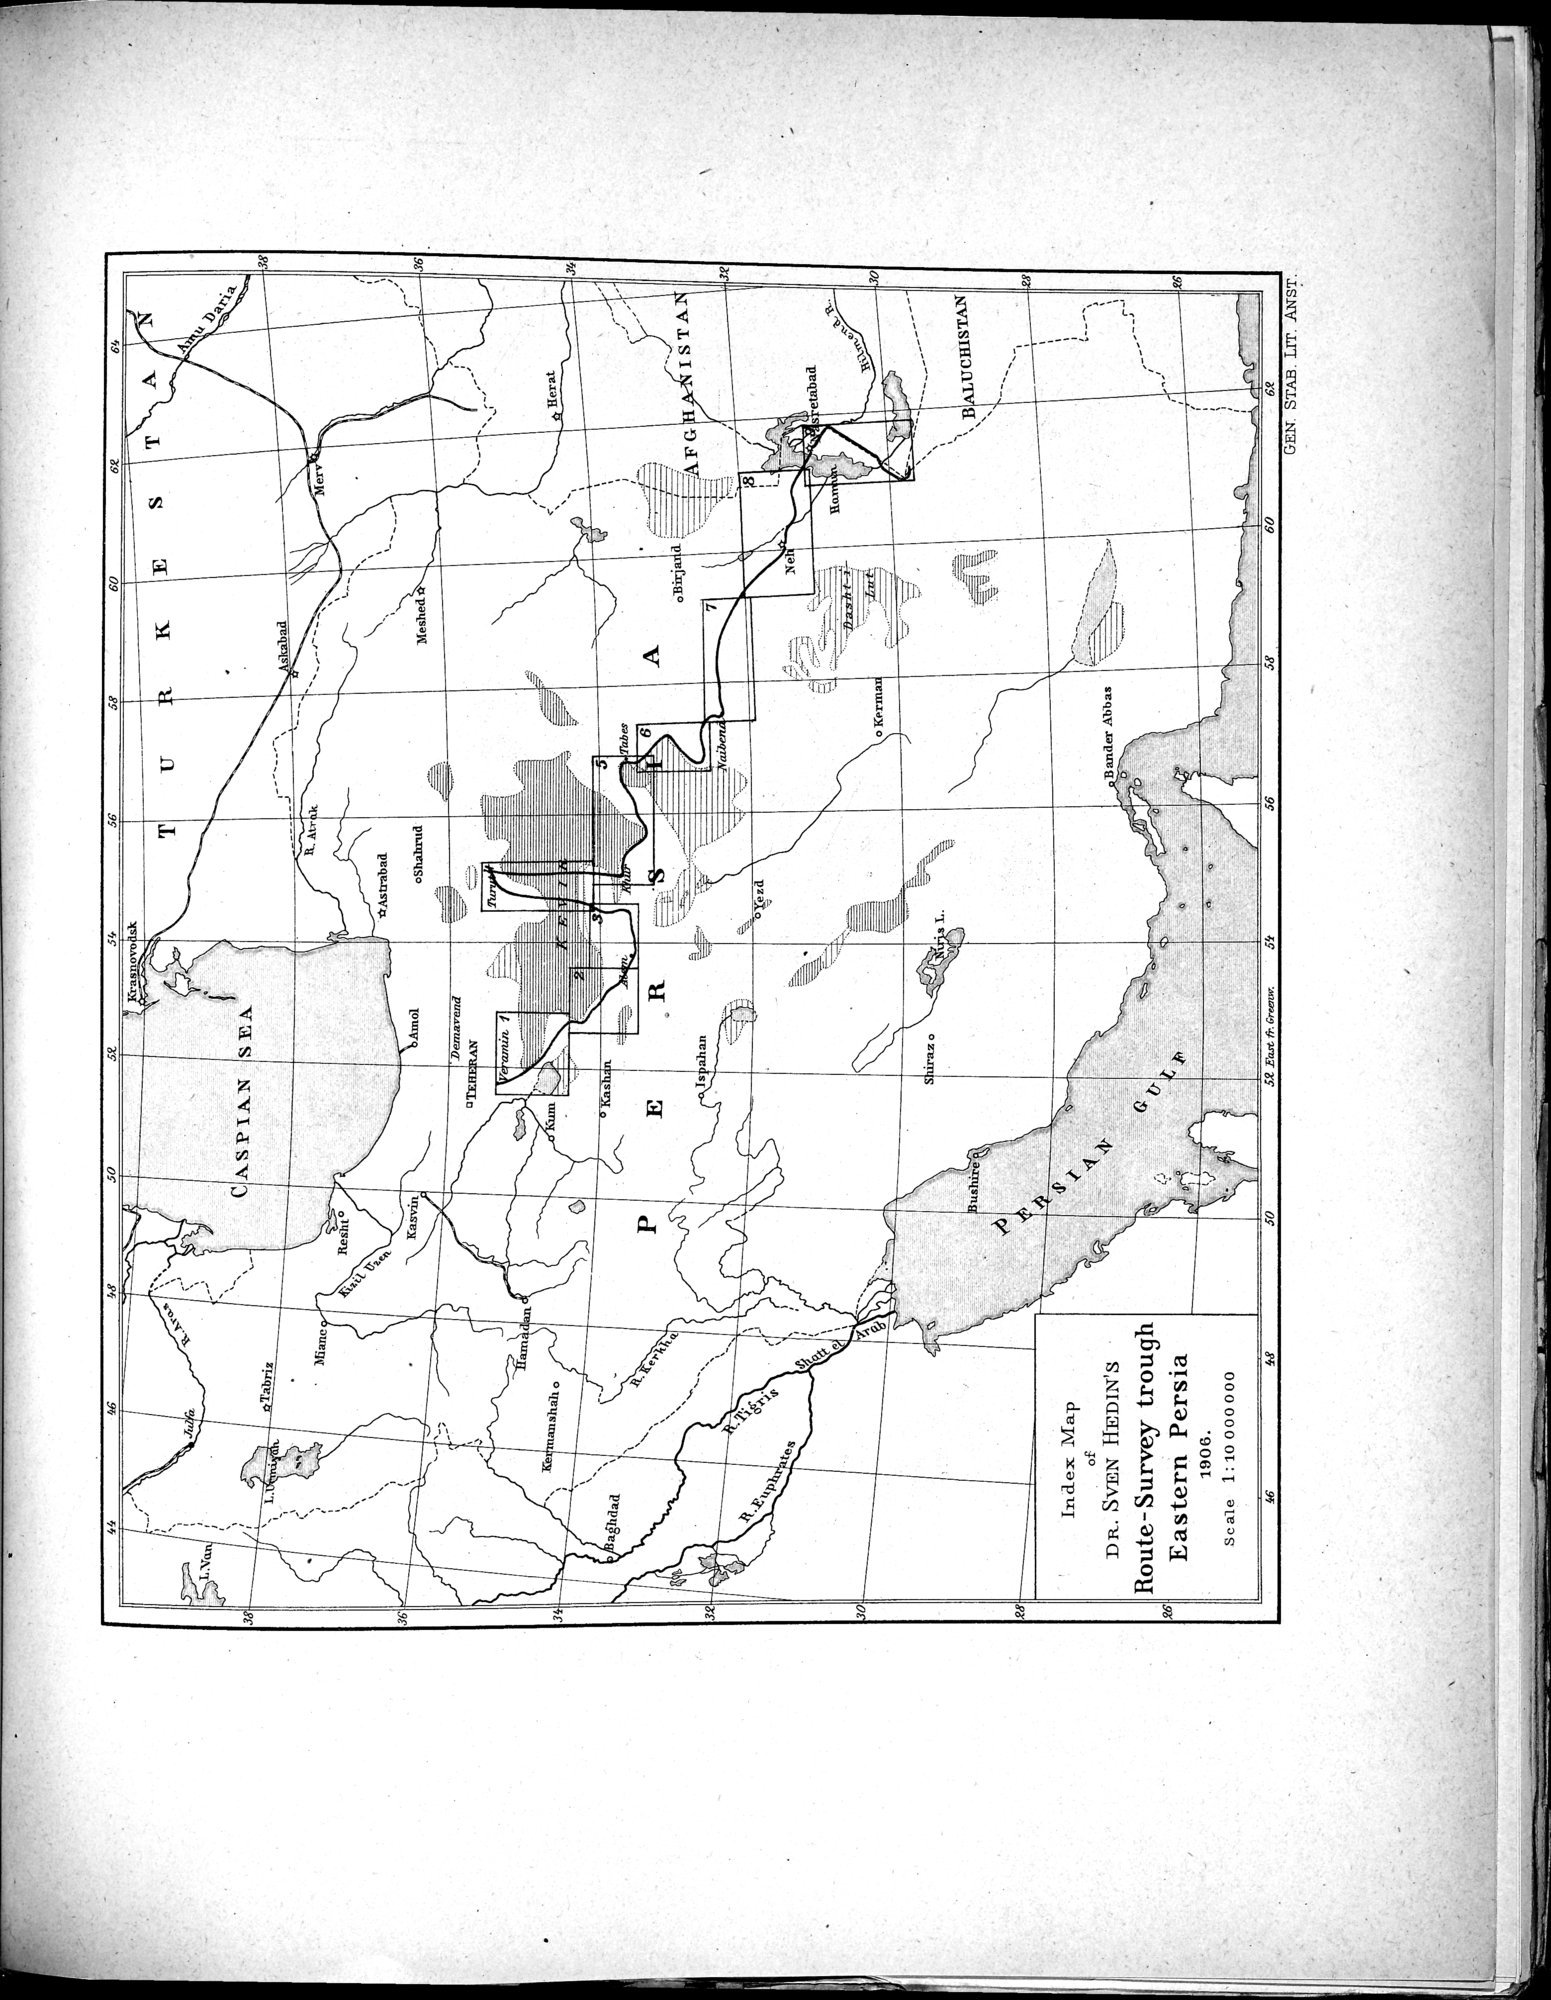 Eine Routenaufnahme durch Ostpersien : vol.1 / Page 15 (Grayscale High Resolution Image)